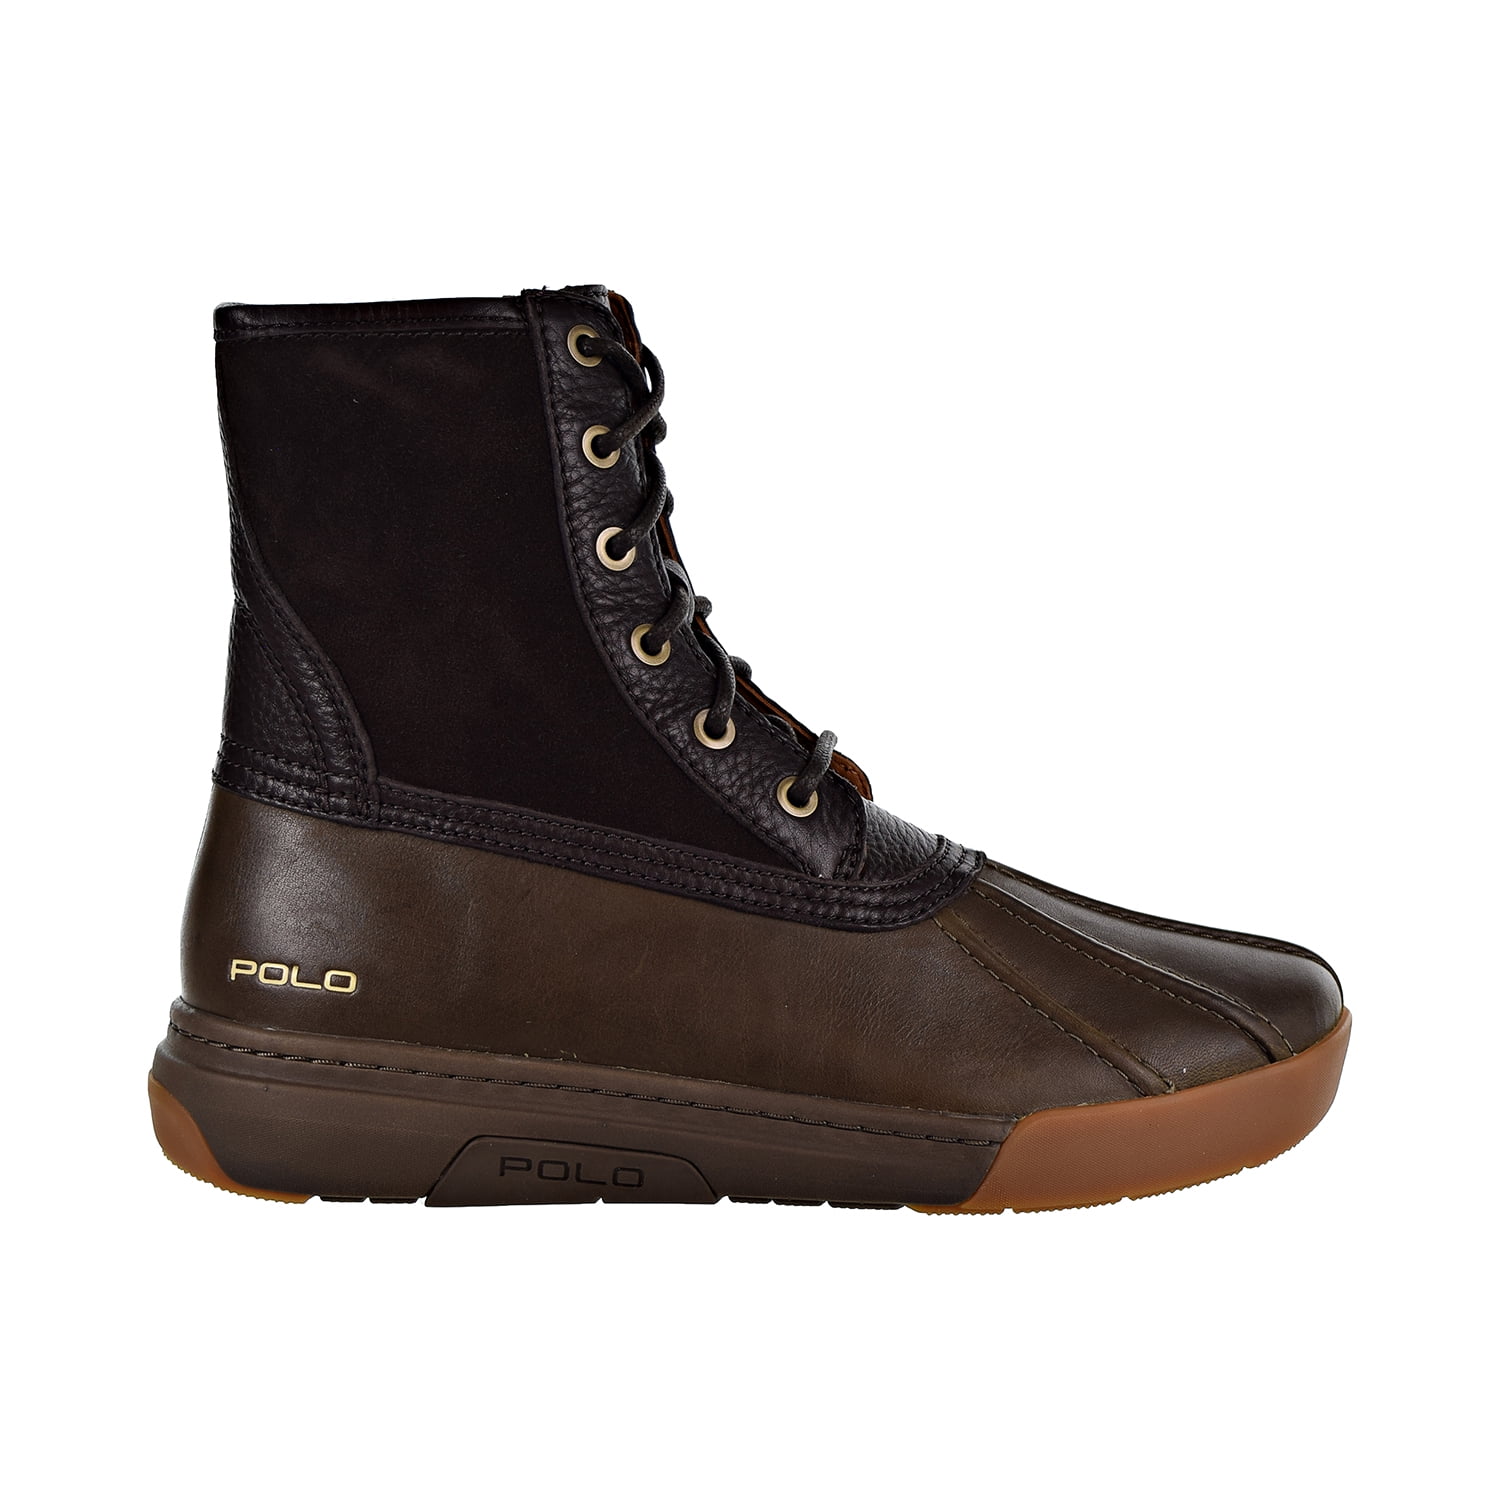 Polo Ralph Lauren Declan Men's Boots Dark Brown 809729624-003